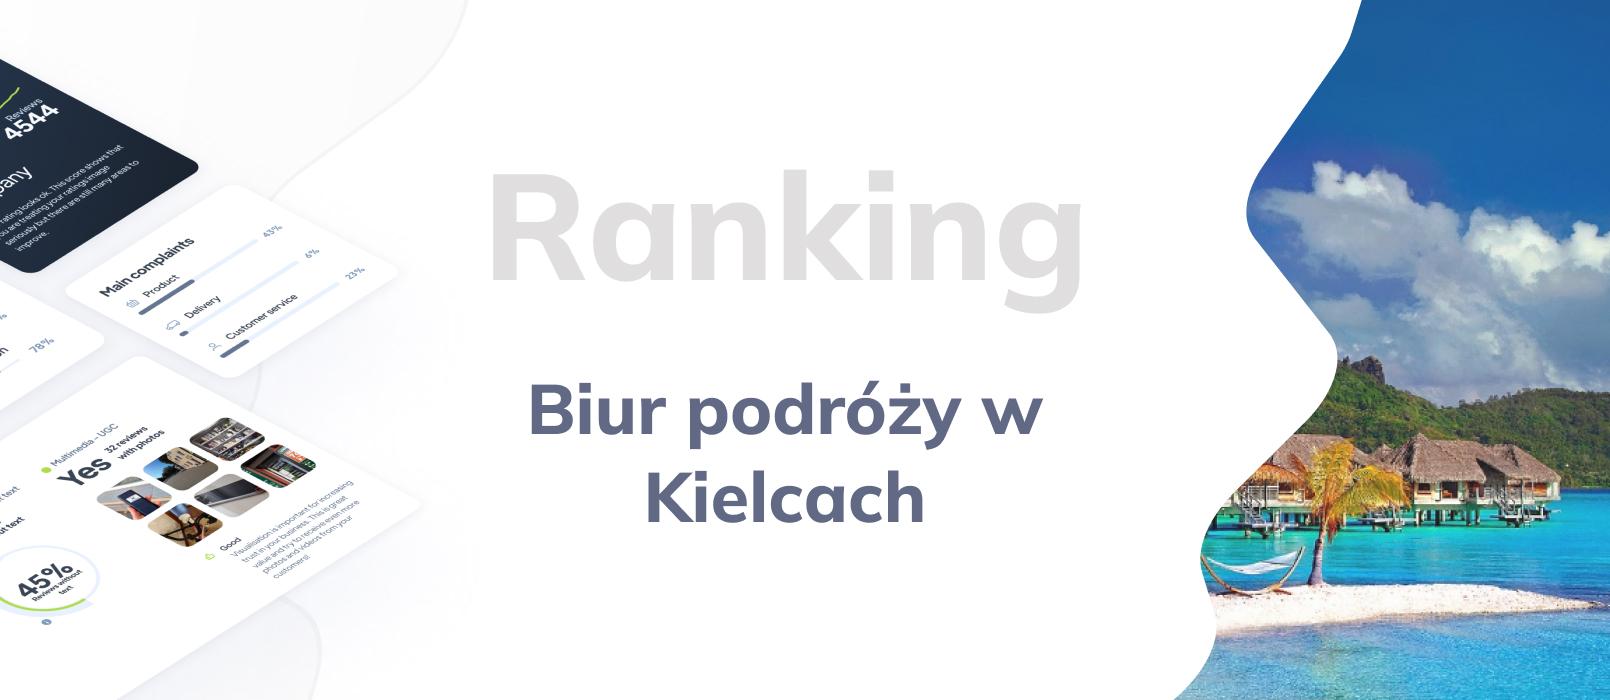 Biura podróży w Kielcach - ranking TOP 10